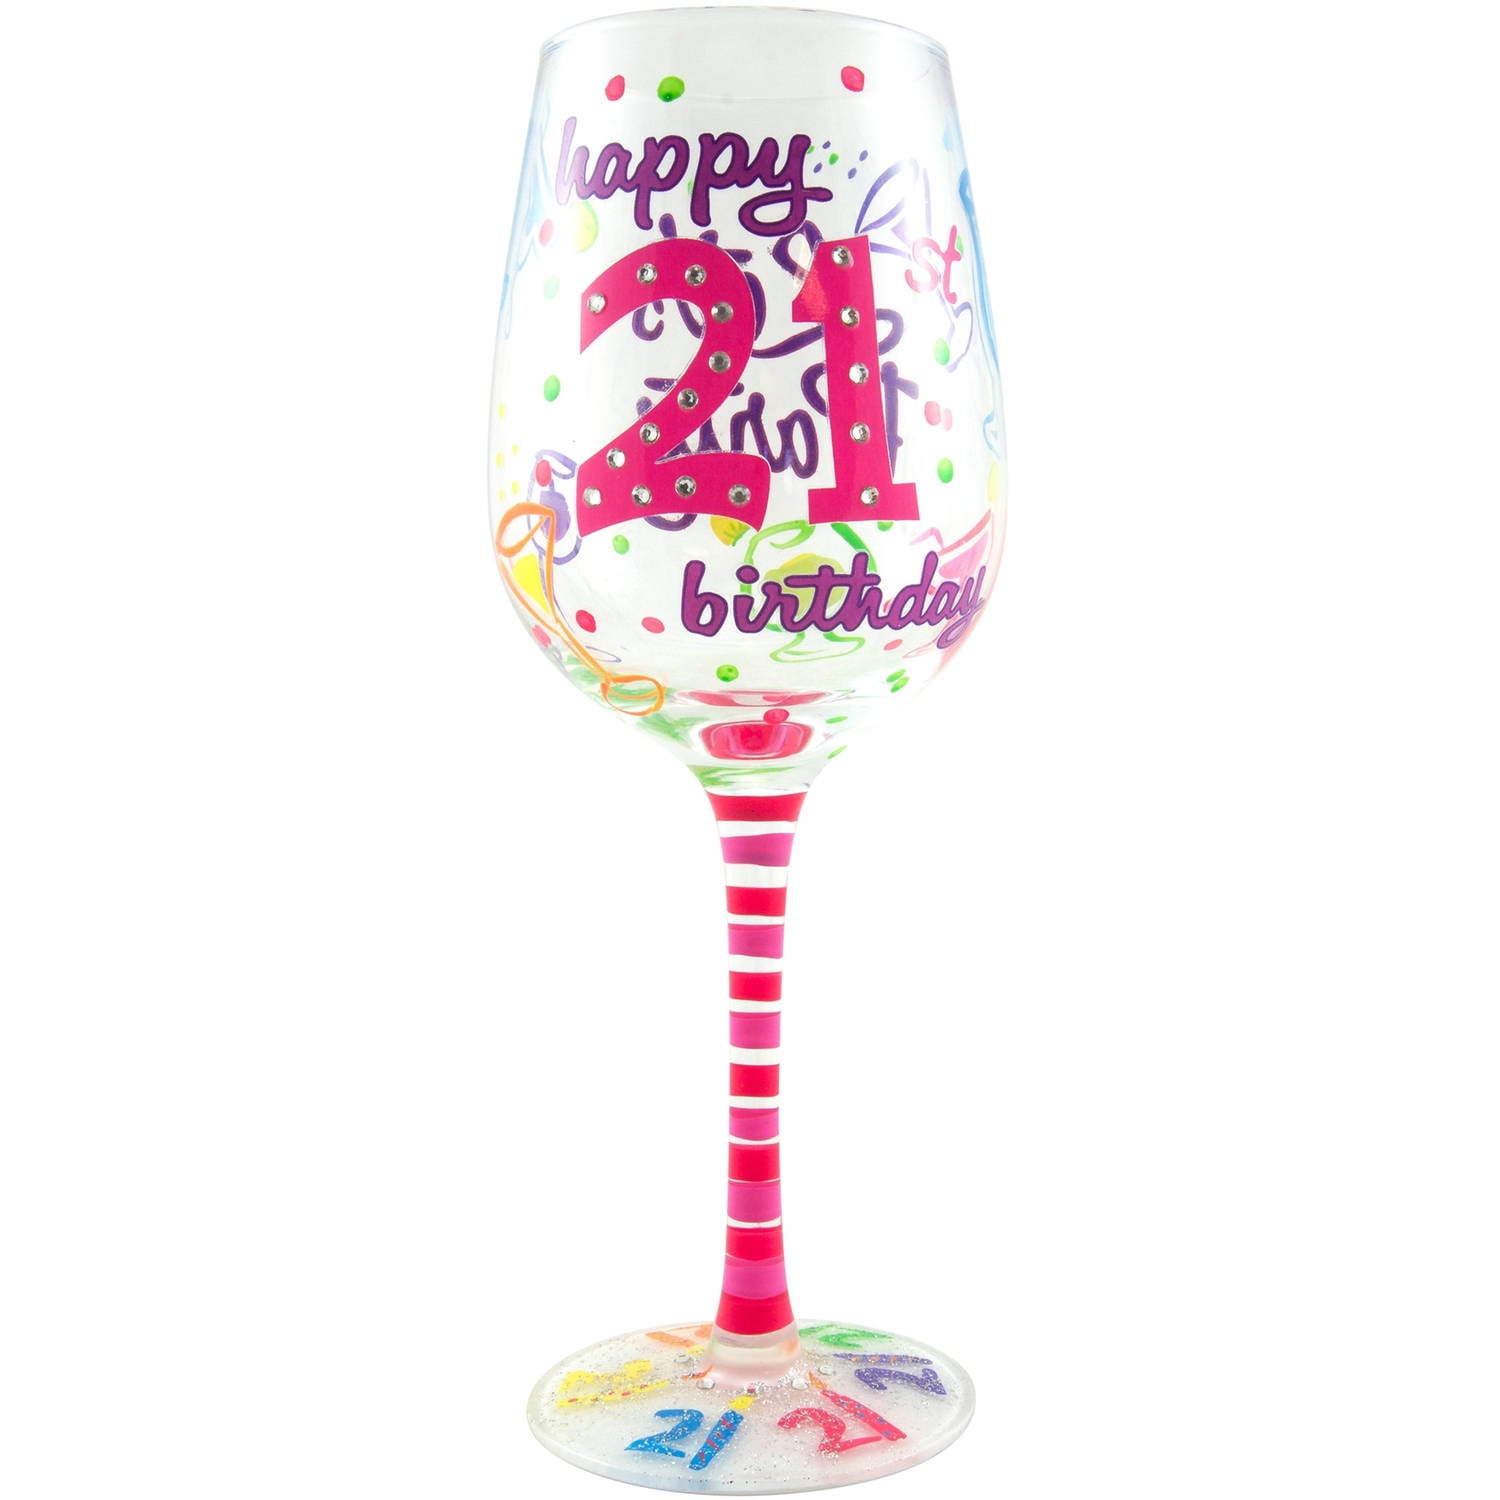 21st Birthday Stars Champagne Flute Glass Gift